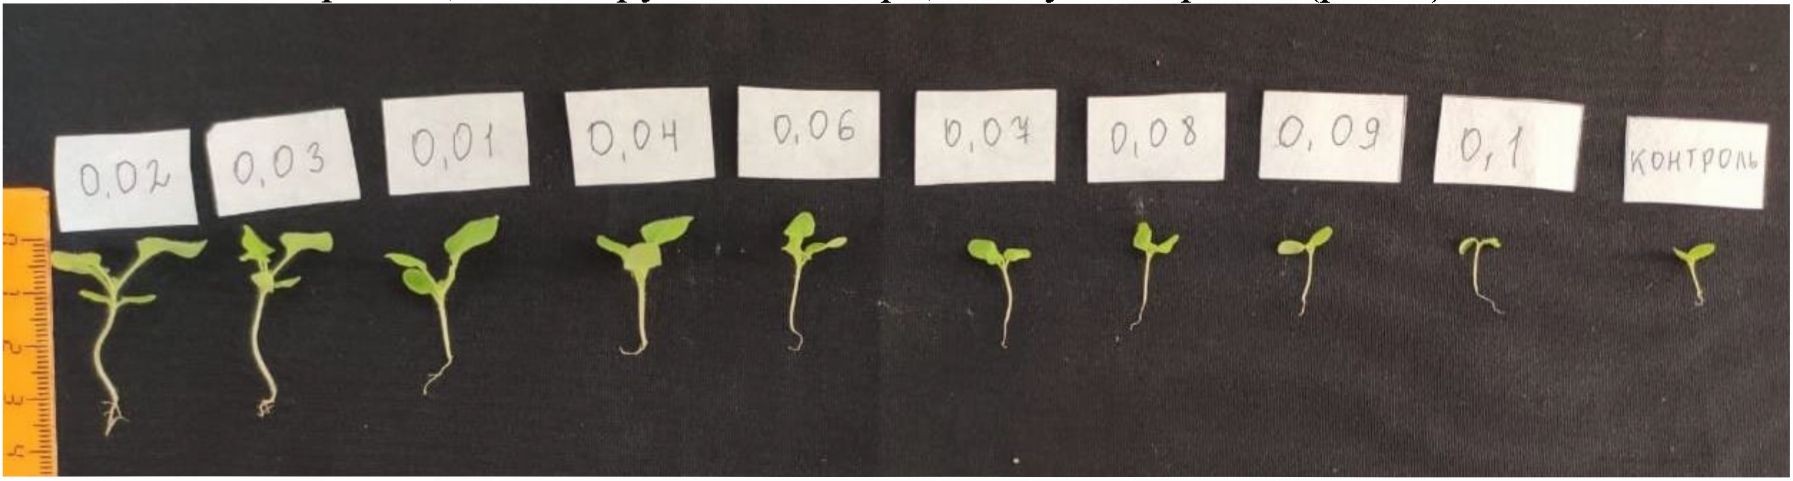 Влияние различных концентраций молибдата натрия на прорастание семян nicotiana benthamiana